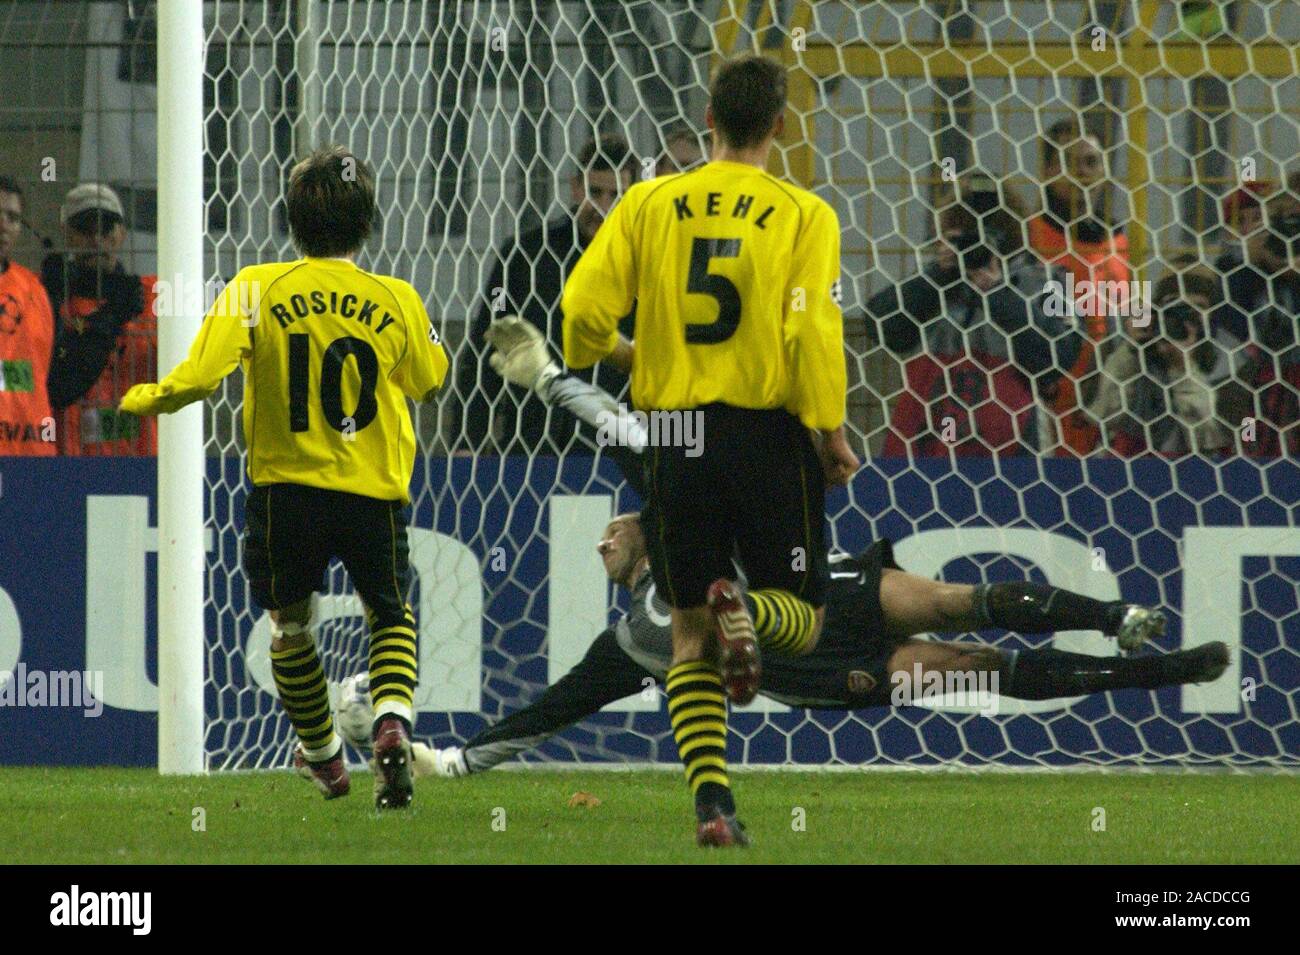 Westfalestadion Dortmund Allemagne 30.10.2002, Football : saison 2002-2003, la Ligue des Champions (BVB Borussia Dortmund, jaune) contre Arsenal FC (ARS, rouge) 2:1 ; Tomasz ROSICKY (BVB, à gauche) marque un but Banque D'Images